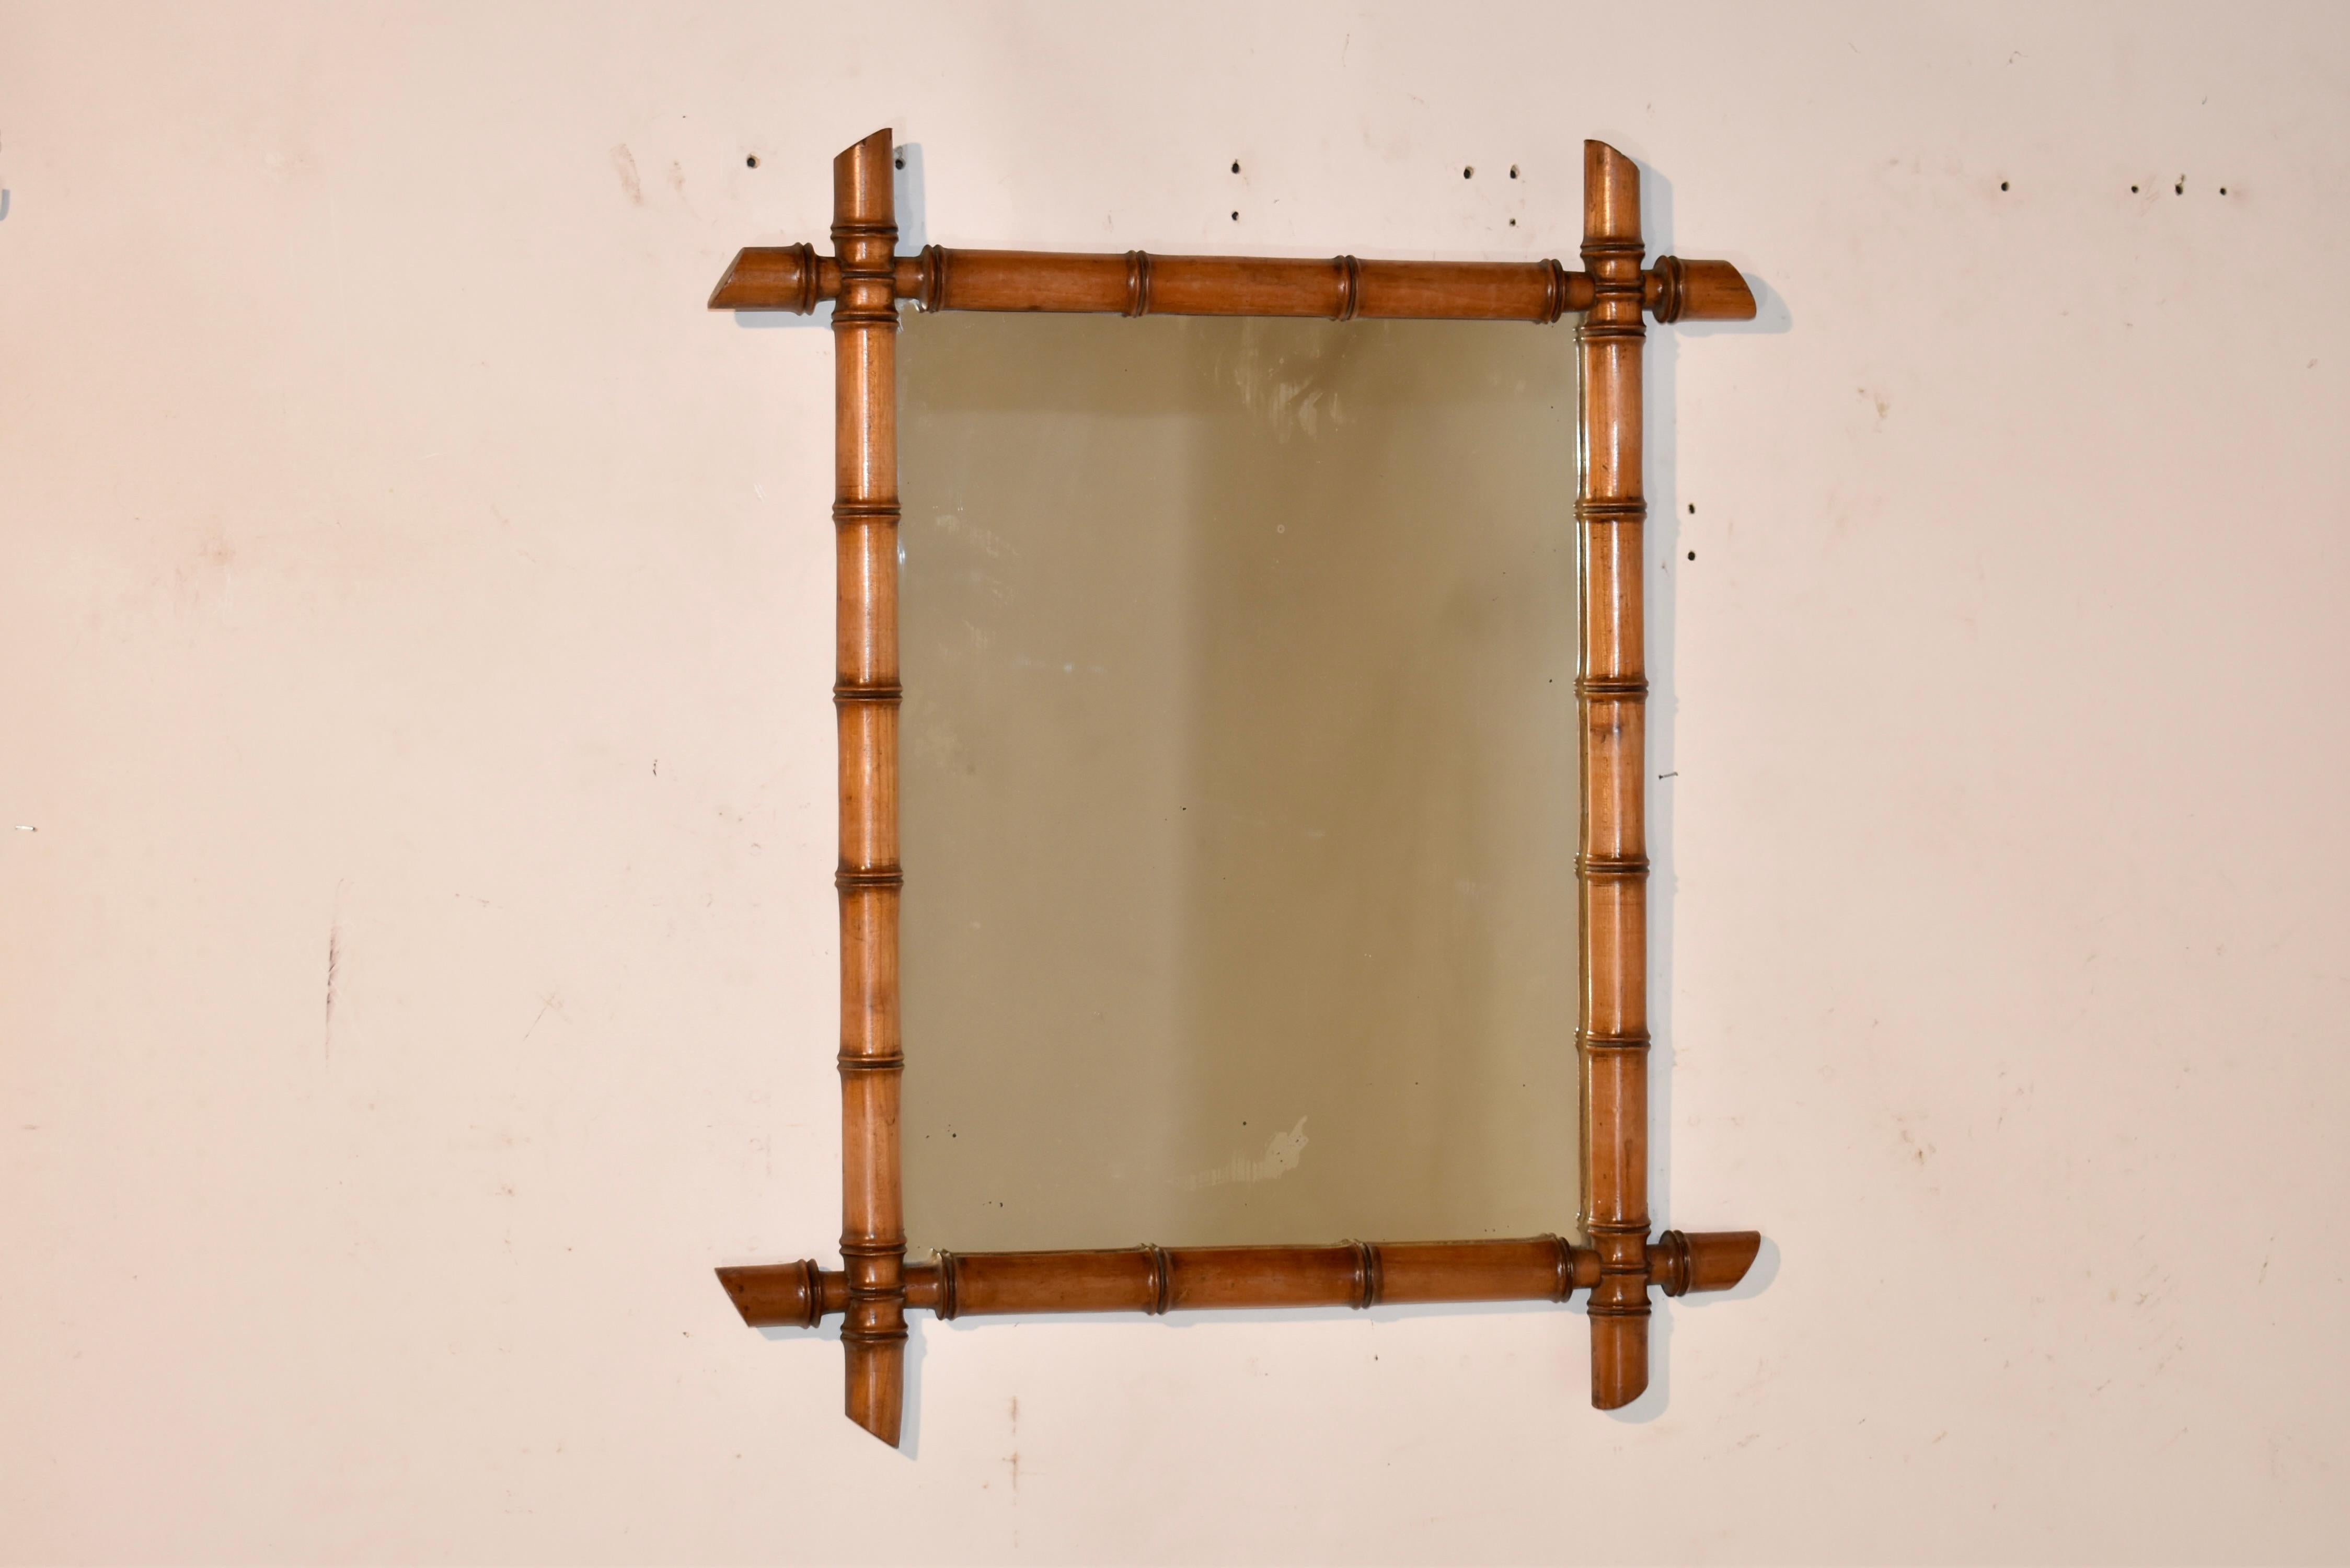 Miroir à encadrement en faux bambou de la fin du 19e siècle, originaire de France.  Le cadre est en cerisier et tourné à la main pour ressembler à du bambou.  Il entoure un miroir ancien, dont le mercure a subi quelques pertes dues à l'âge, pour un